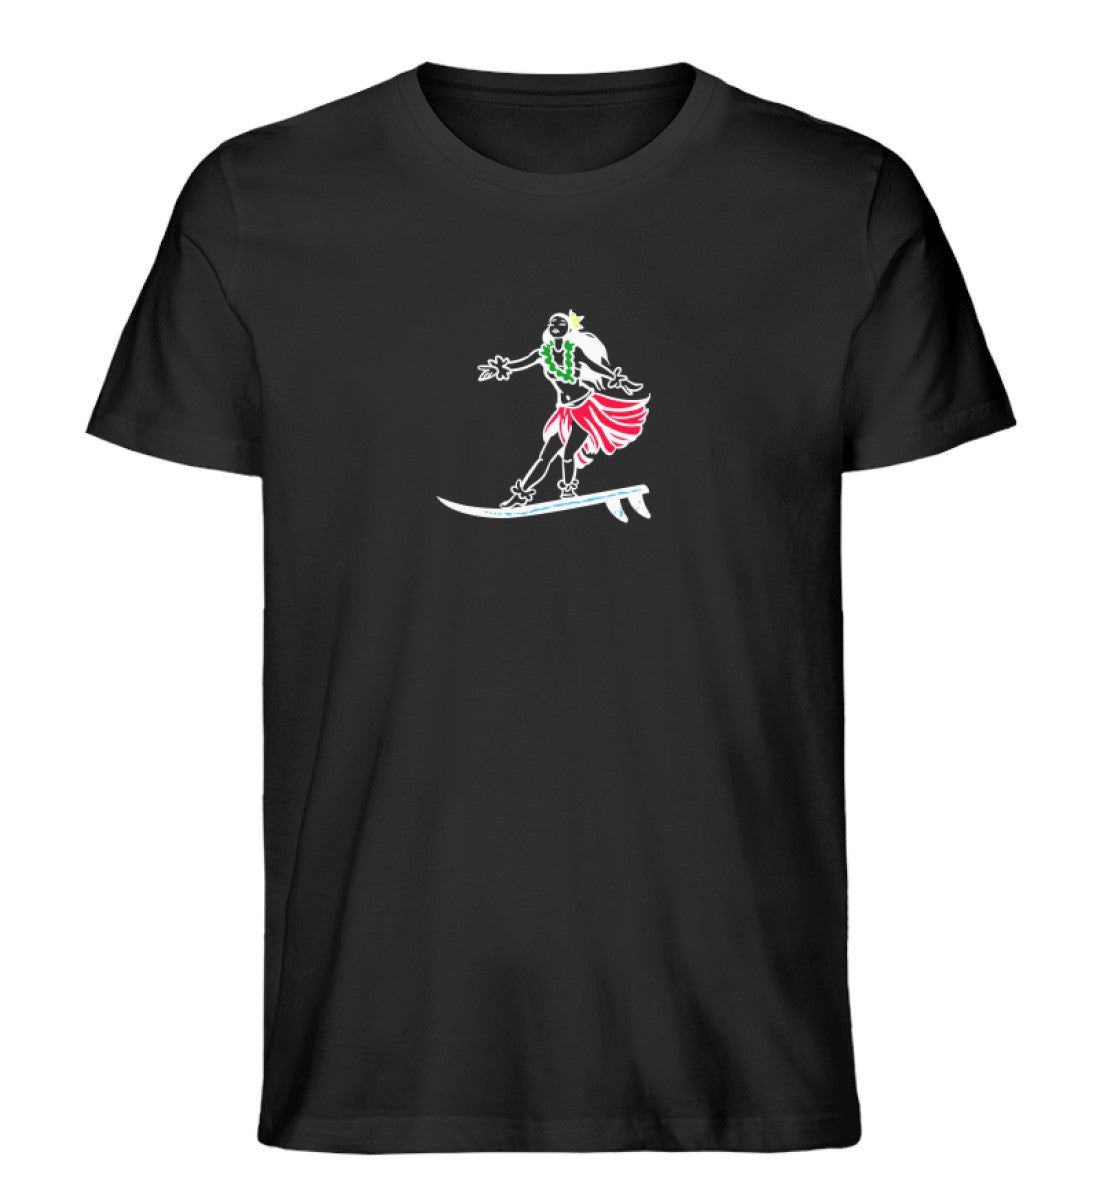 Schwarzes T-Shirt für Frauen und Männer bedruckt mit dem Design der Roger Rockawoo surf get wet